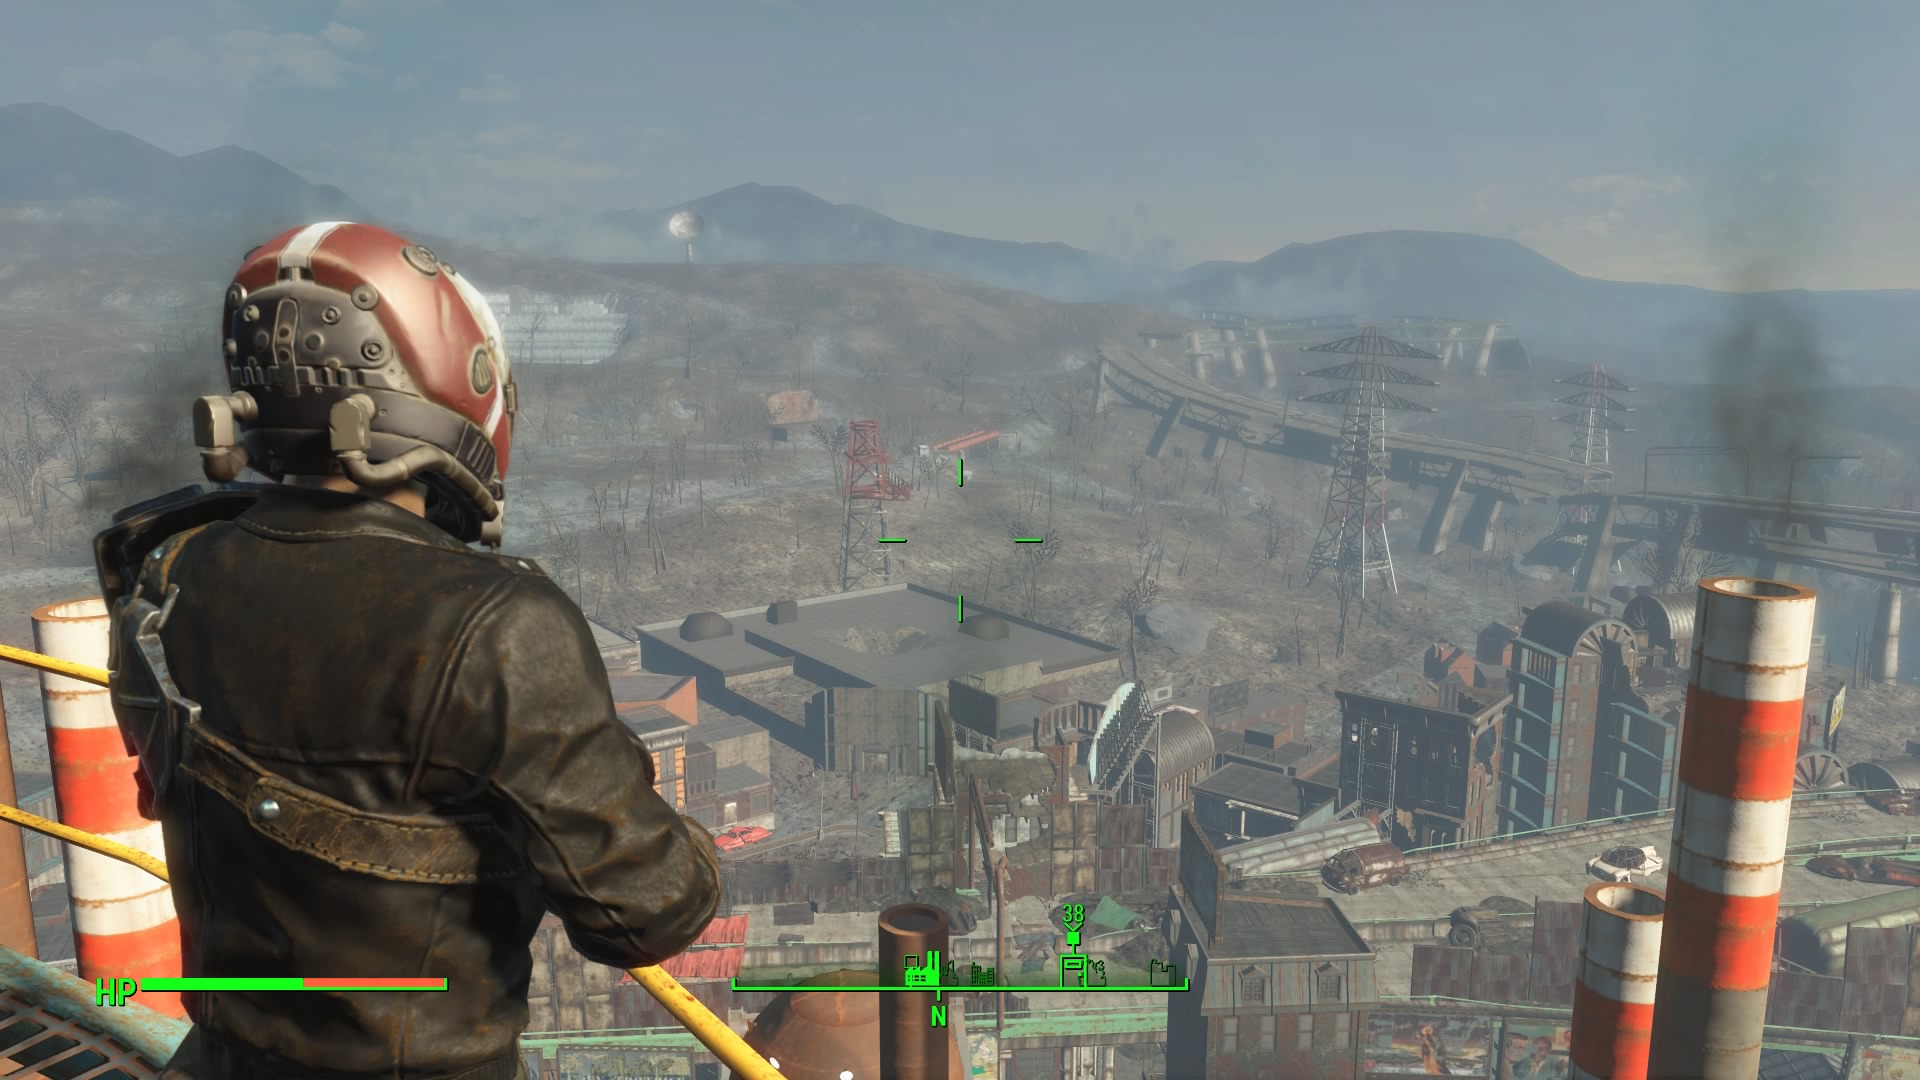 Điểm nhấn đầu tiên và cũng là quan trọng nhất của bất kỳ tựa game thế giới mở nào chính là tạo ra một thế giới giả tưởng lôi cuốn, đây chính là điểm mạnh của dòng game Fallout và Fallout 4 cũng không phải là ngoại lệ.